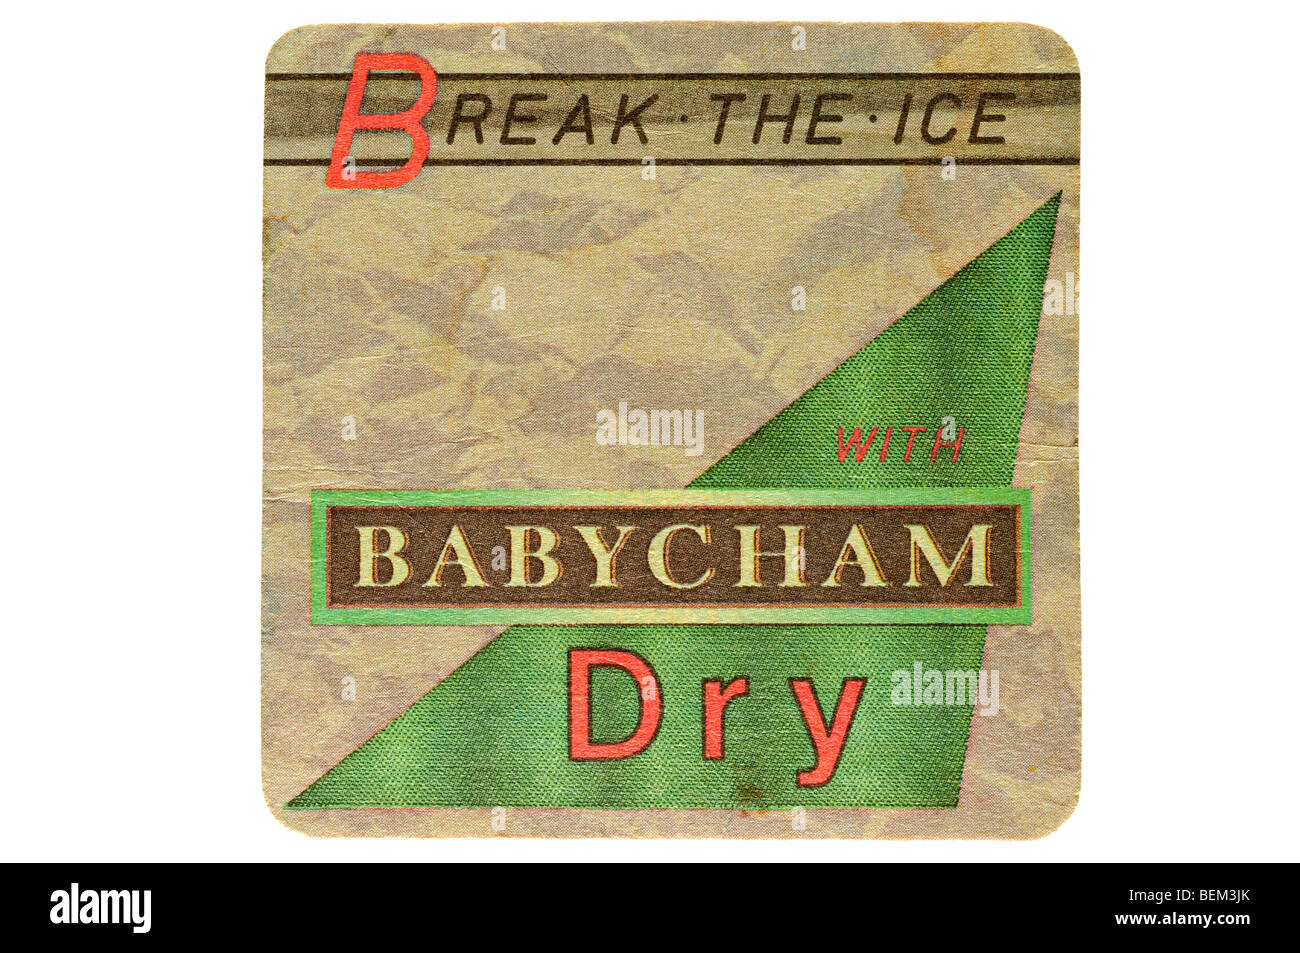 break the ice with babycham dry Stock Photo